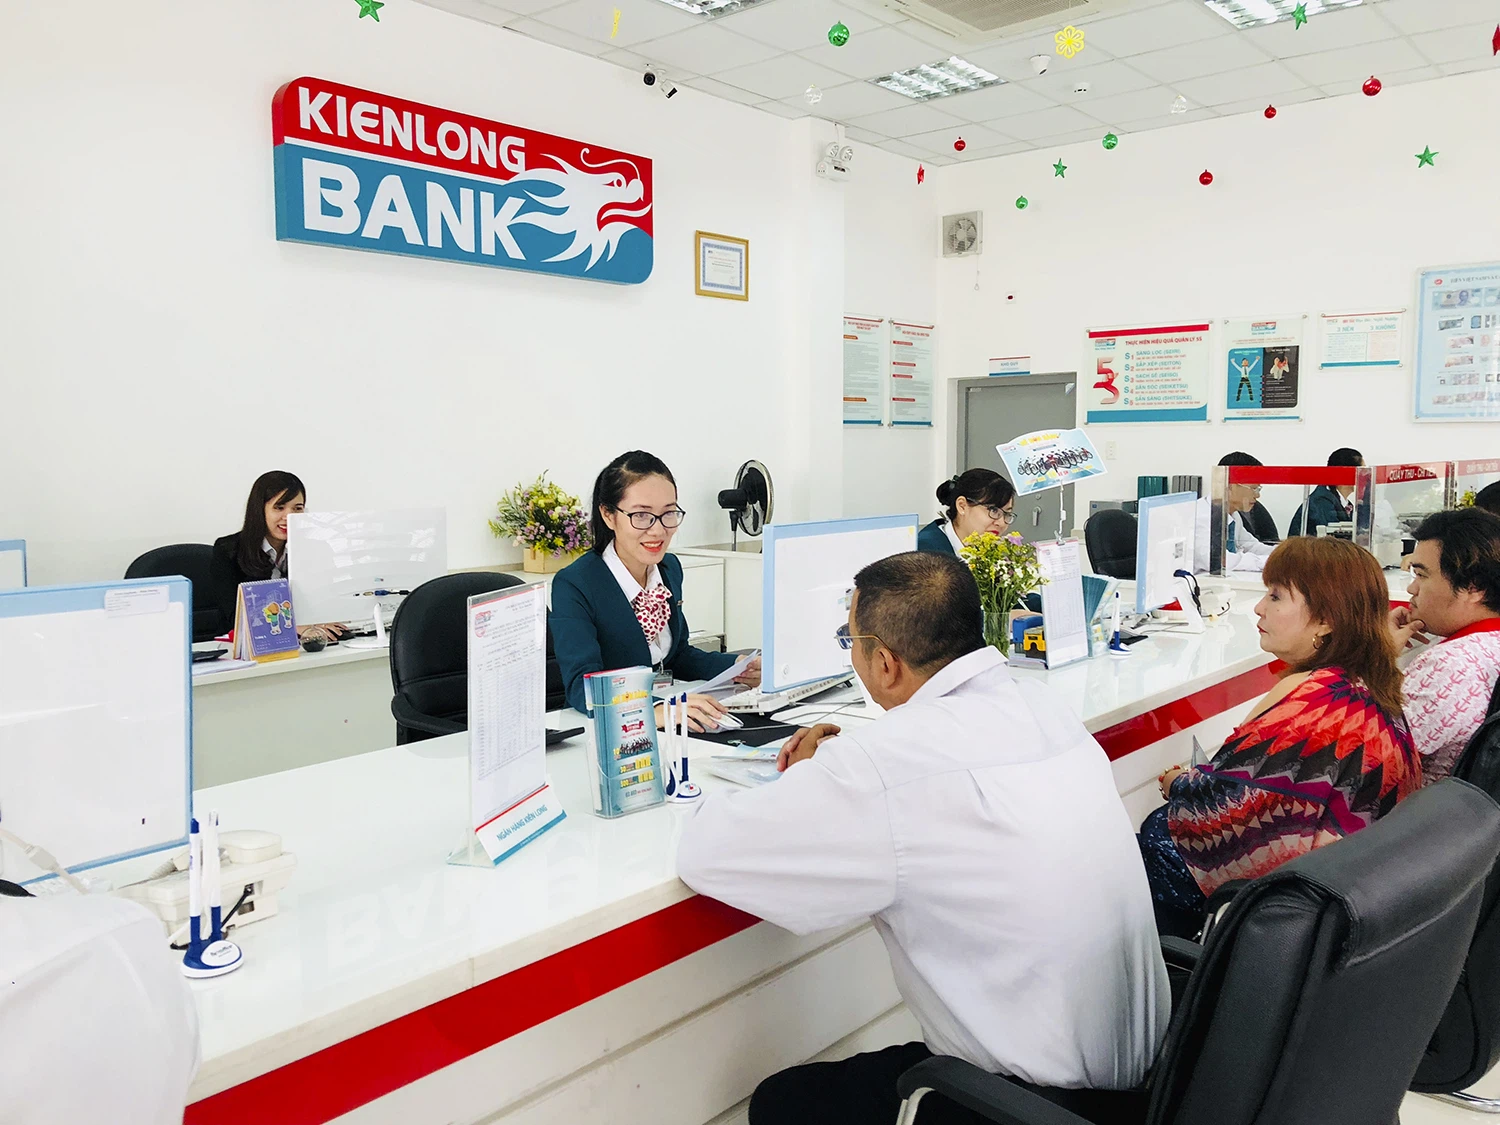 14 ngân hàng: Mỗi ngày làm ra 230 tỷ đồng lợi nhuận, bất ngờ với Kienlongbank - Ảnh 4.